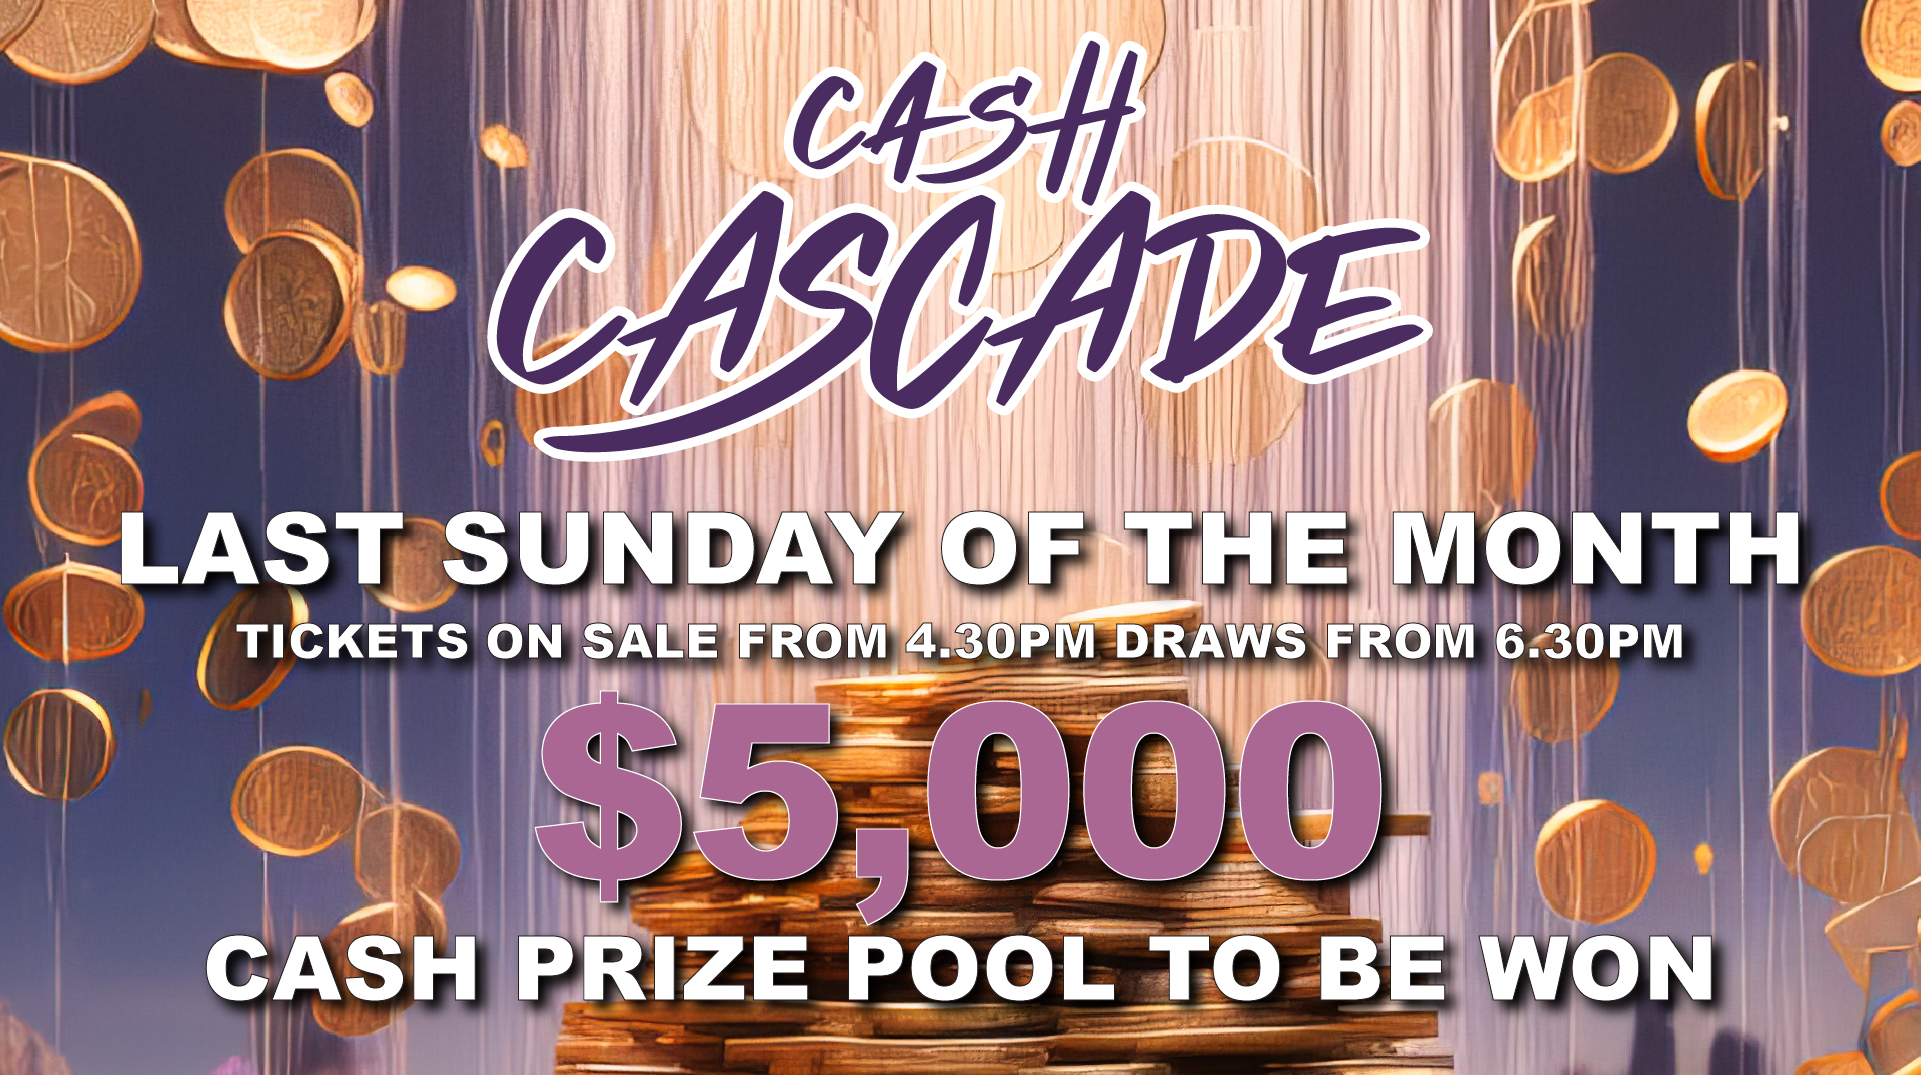 Cash Cascade $5,000 draw @ SS&A